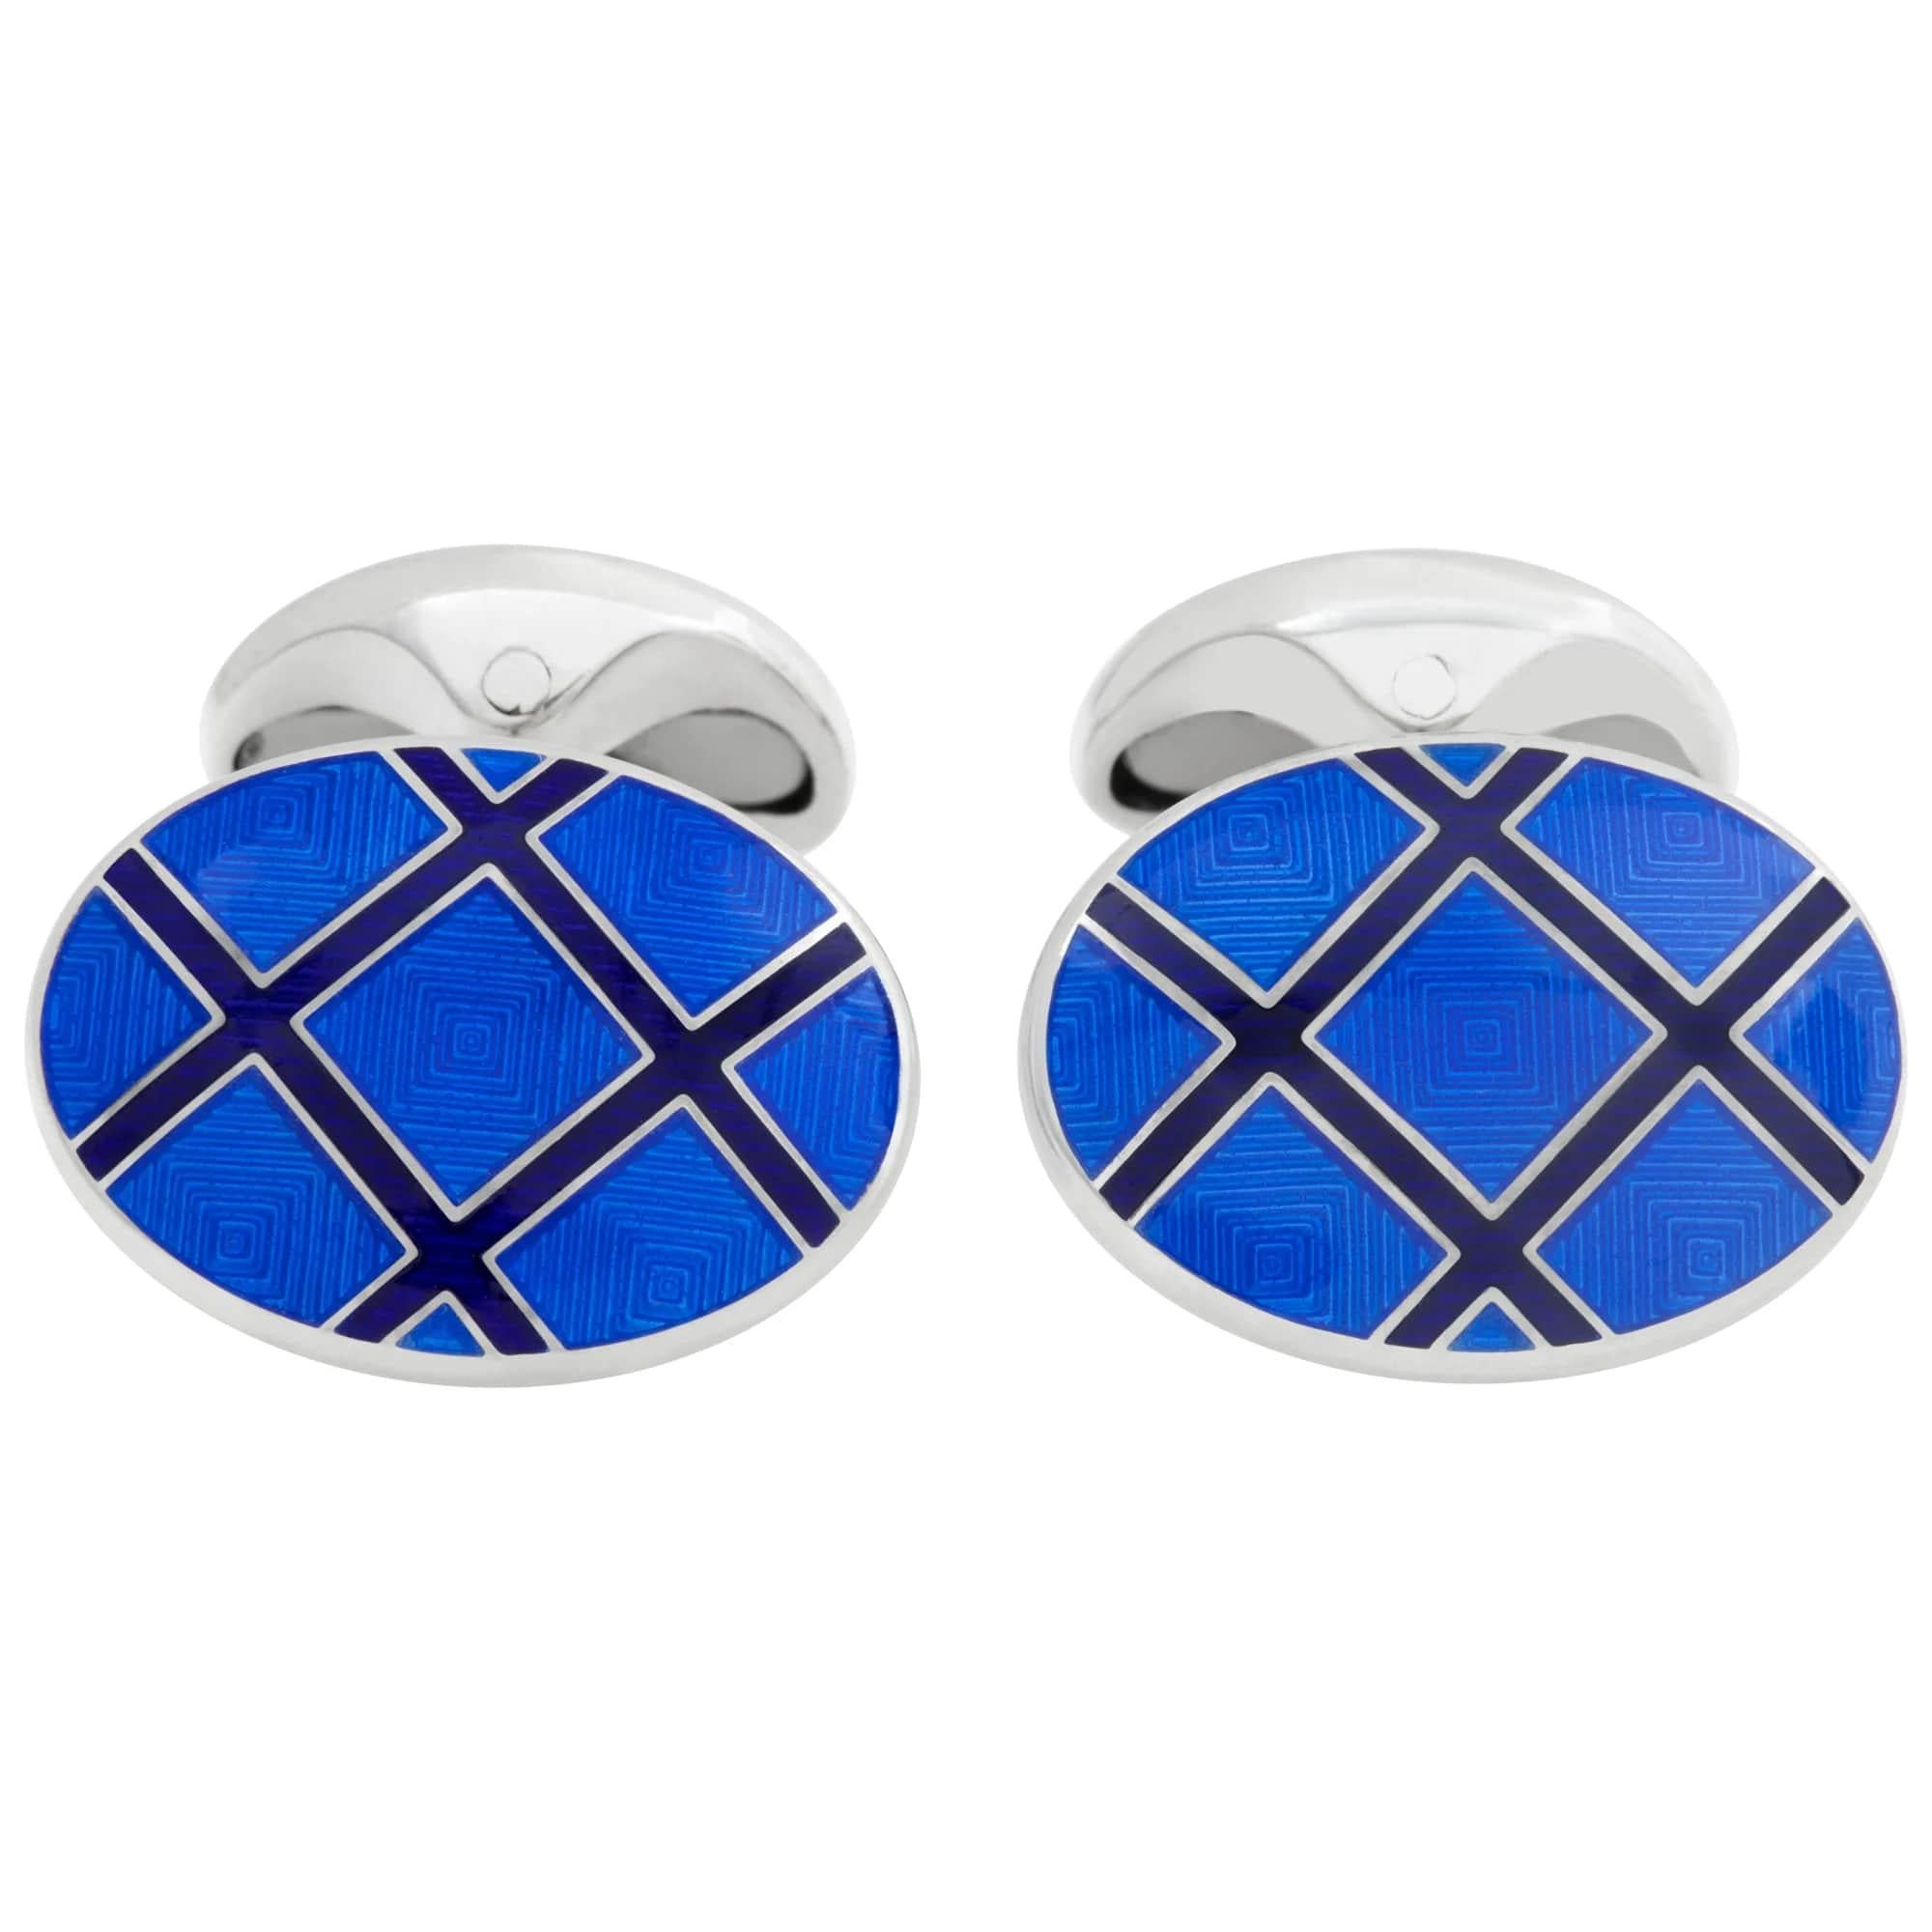 Tiffany & Co. Silver Cufflinks with Blue & Black Enamel Cross Pattern For Sale